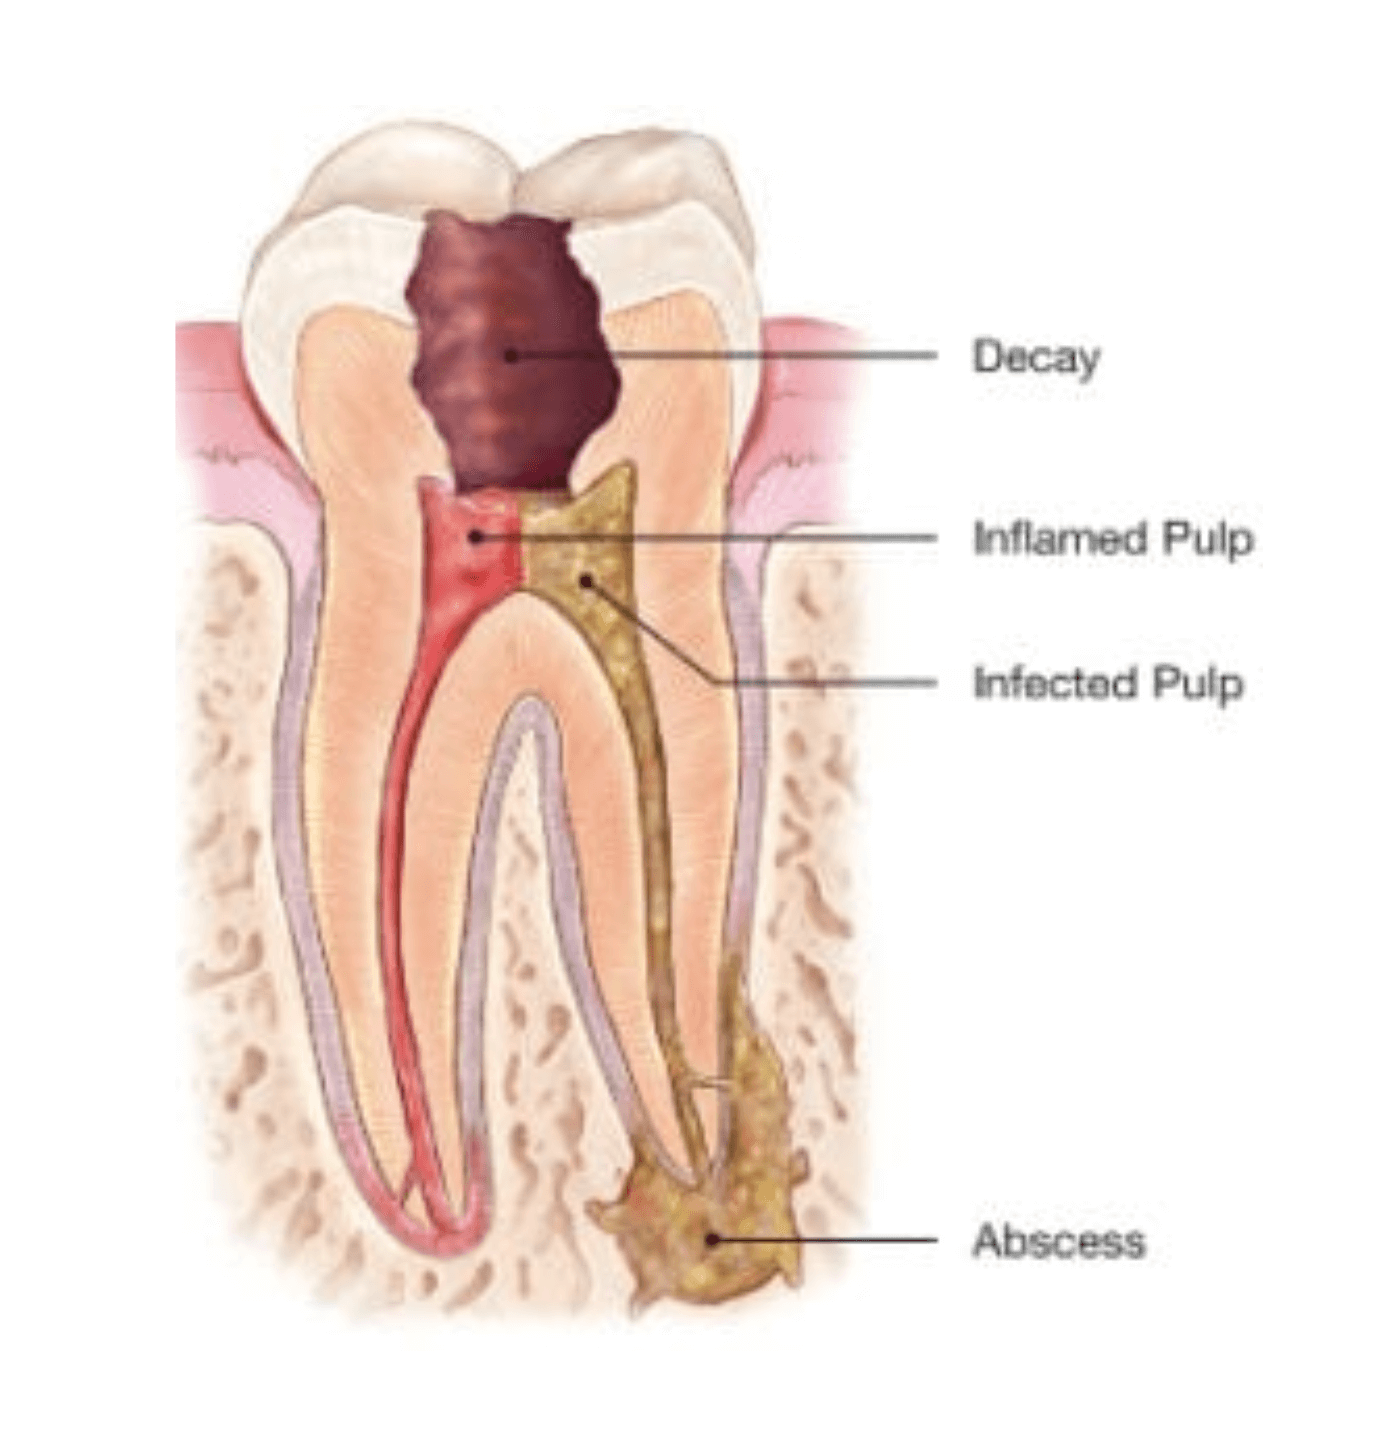 Коренные зубы нервы